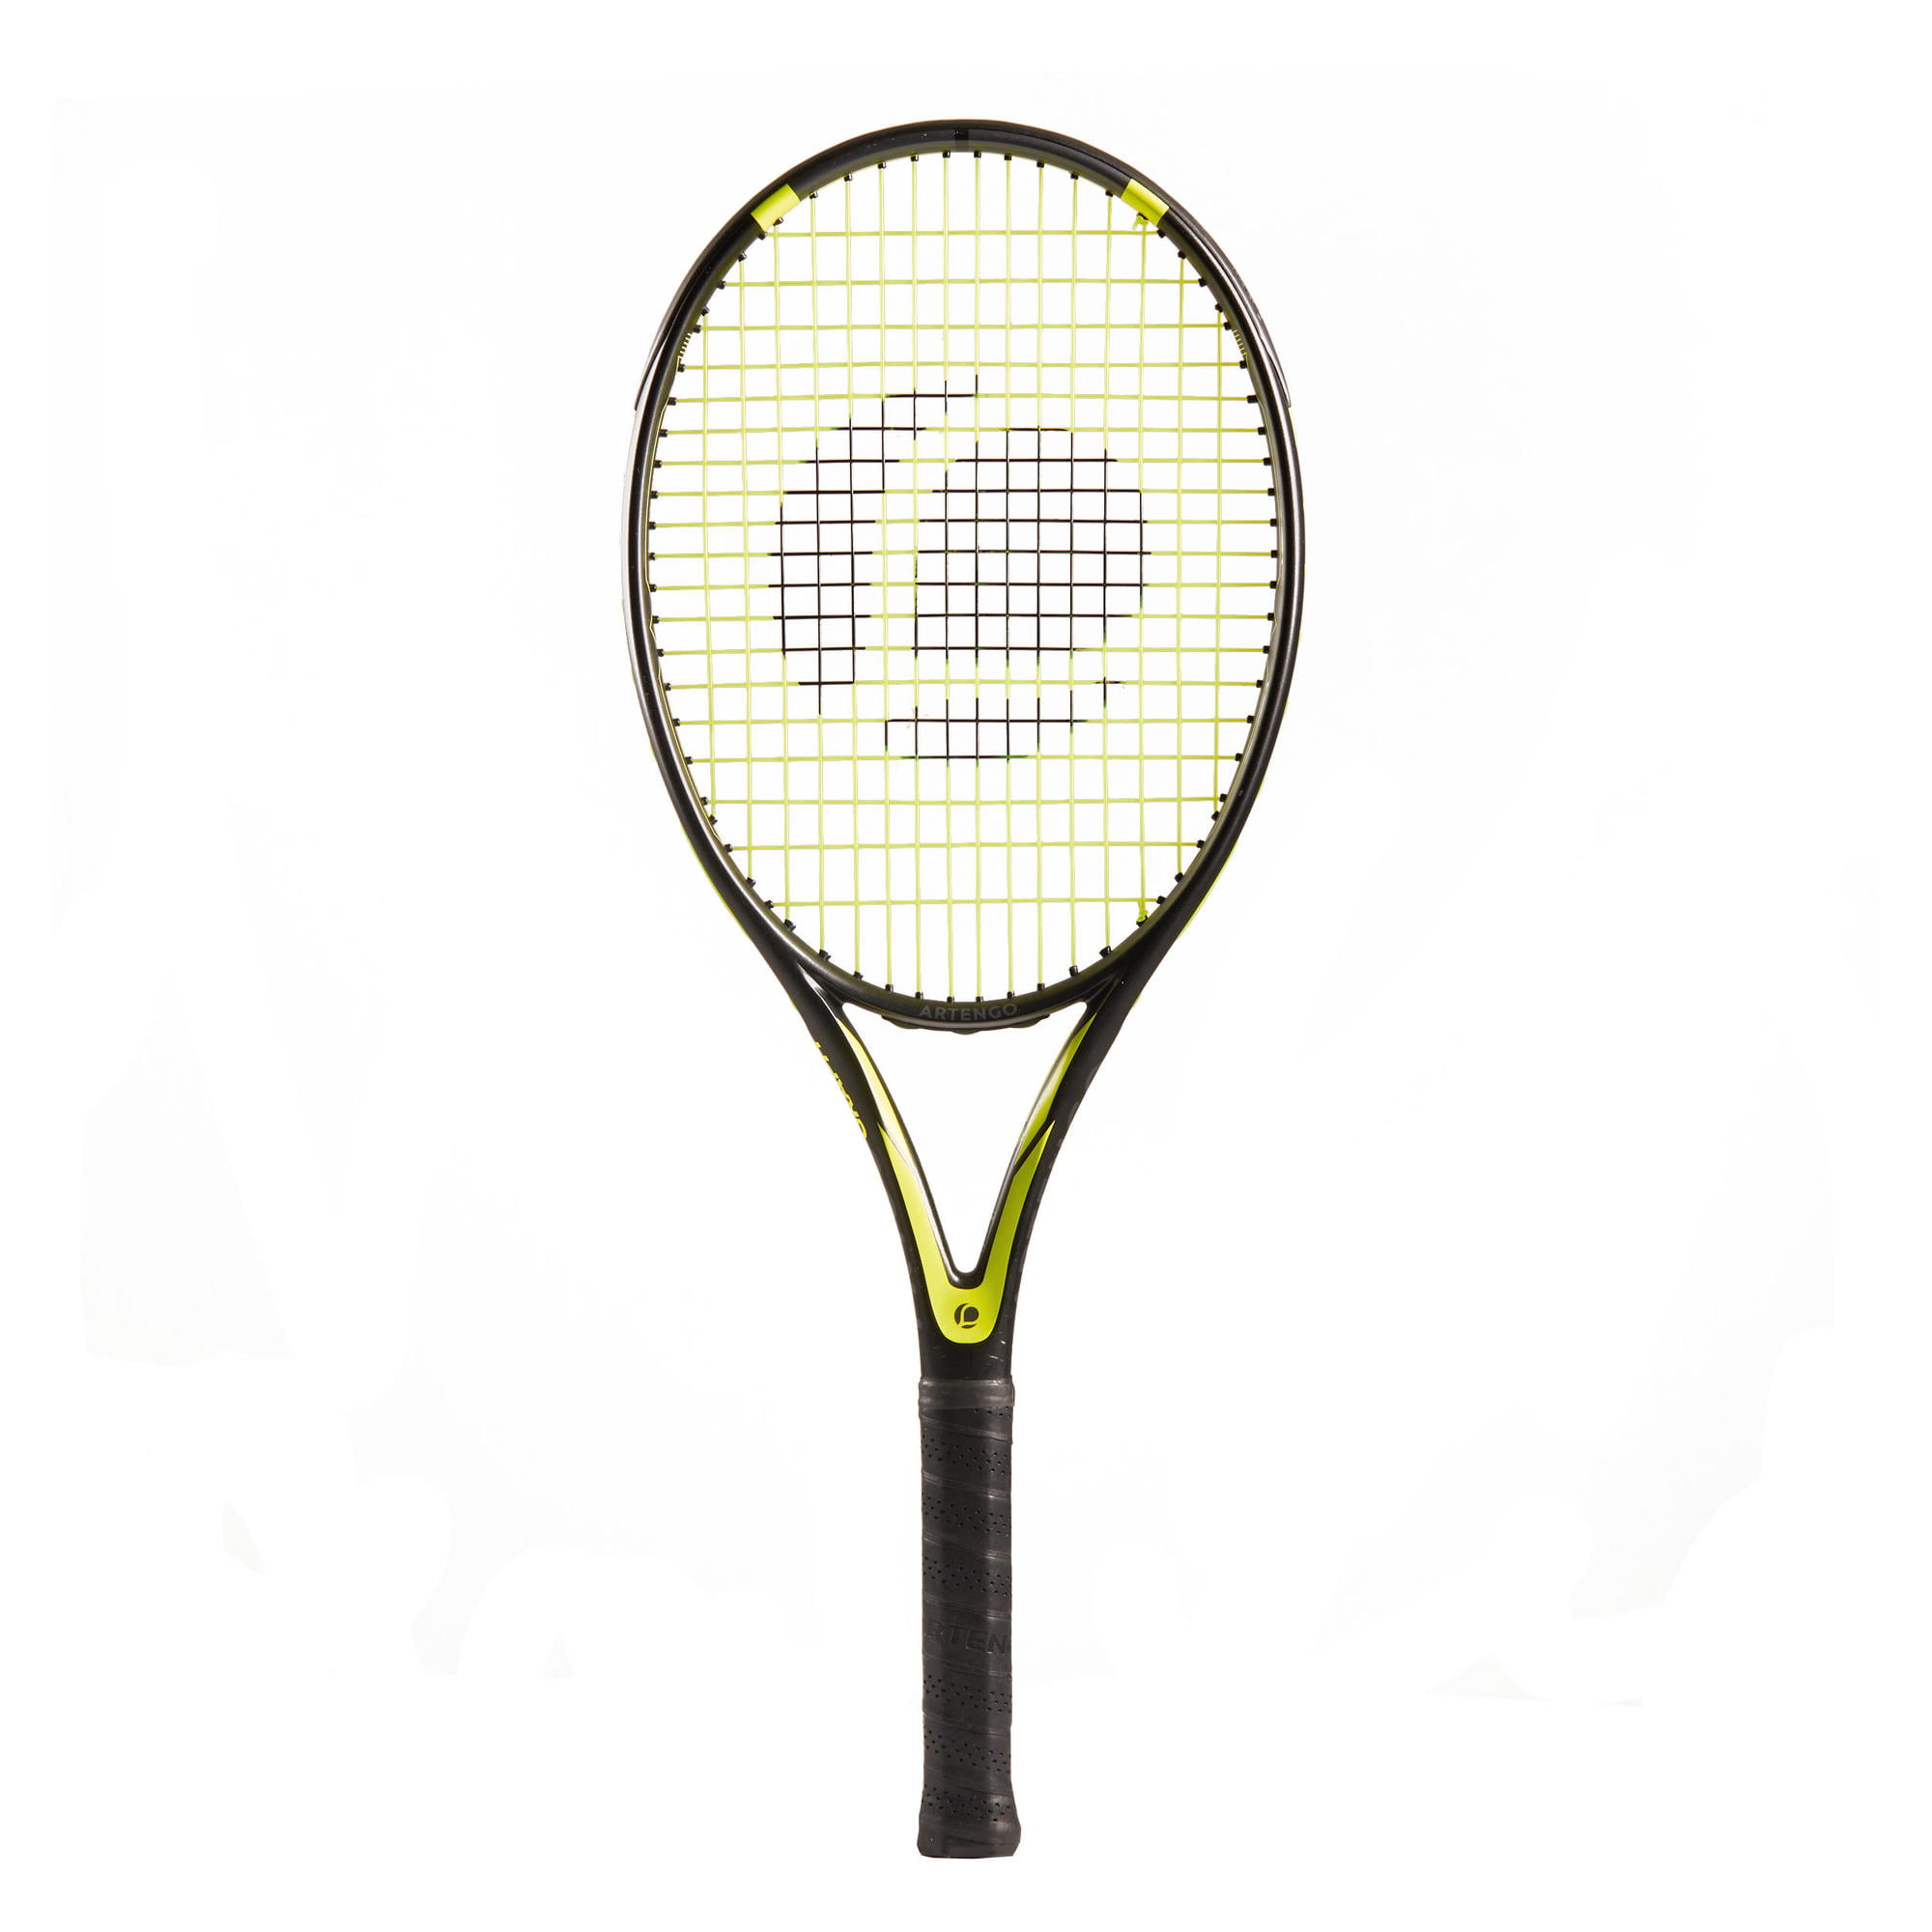 decathlon artengo tennis racket